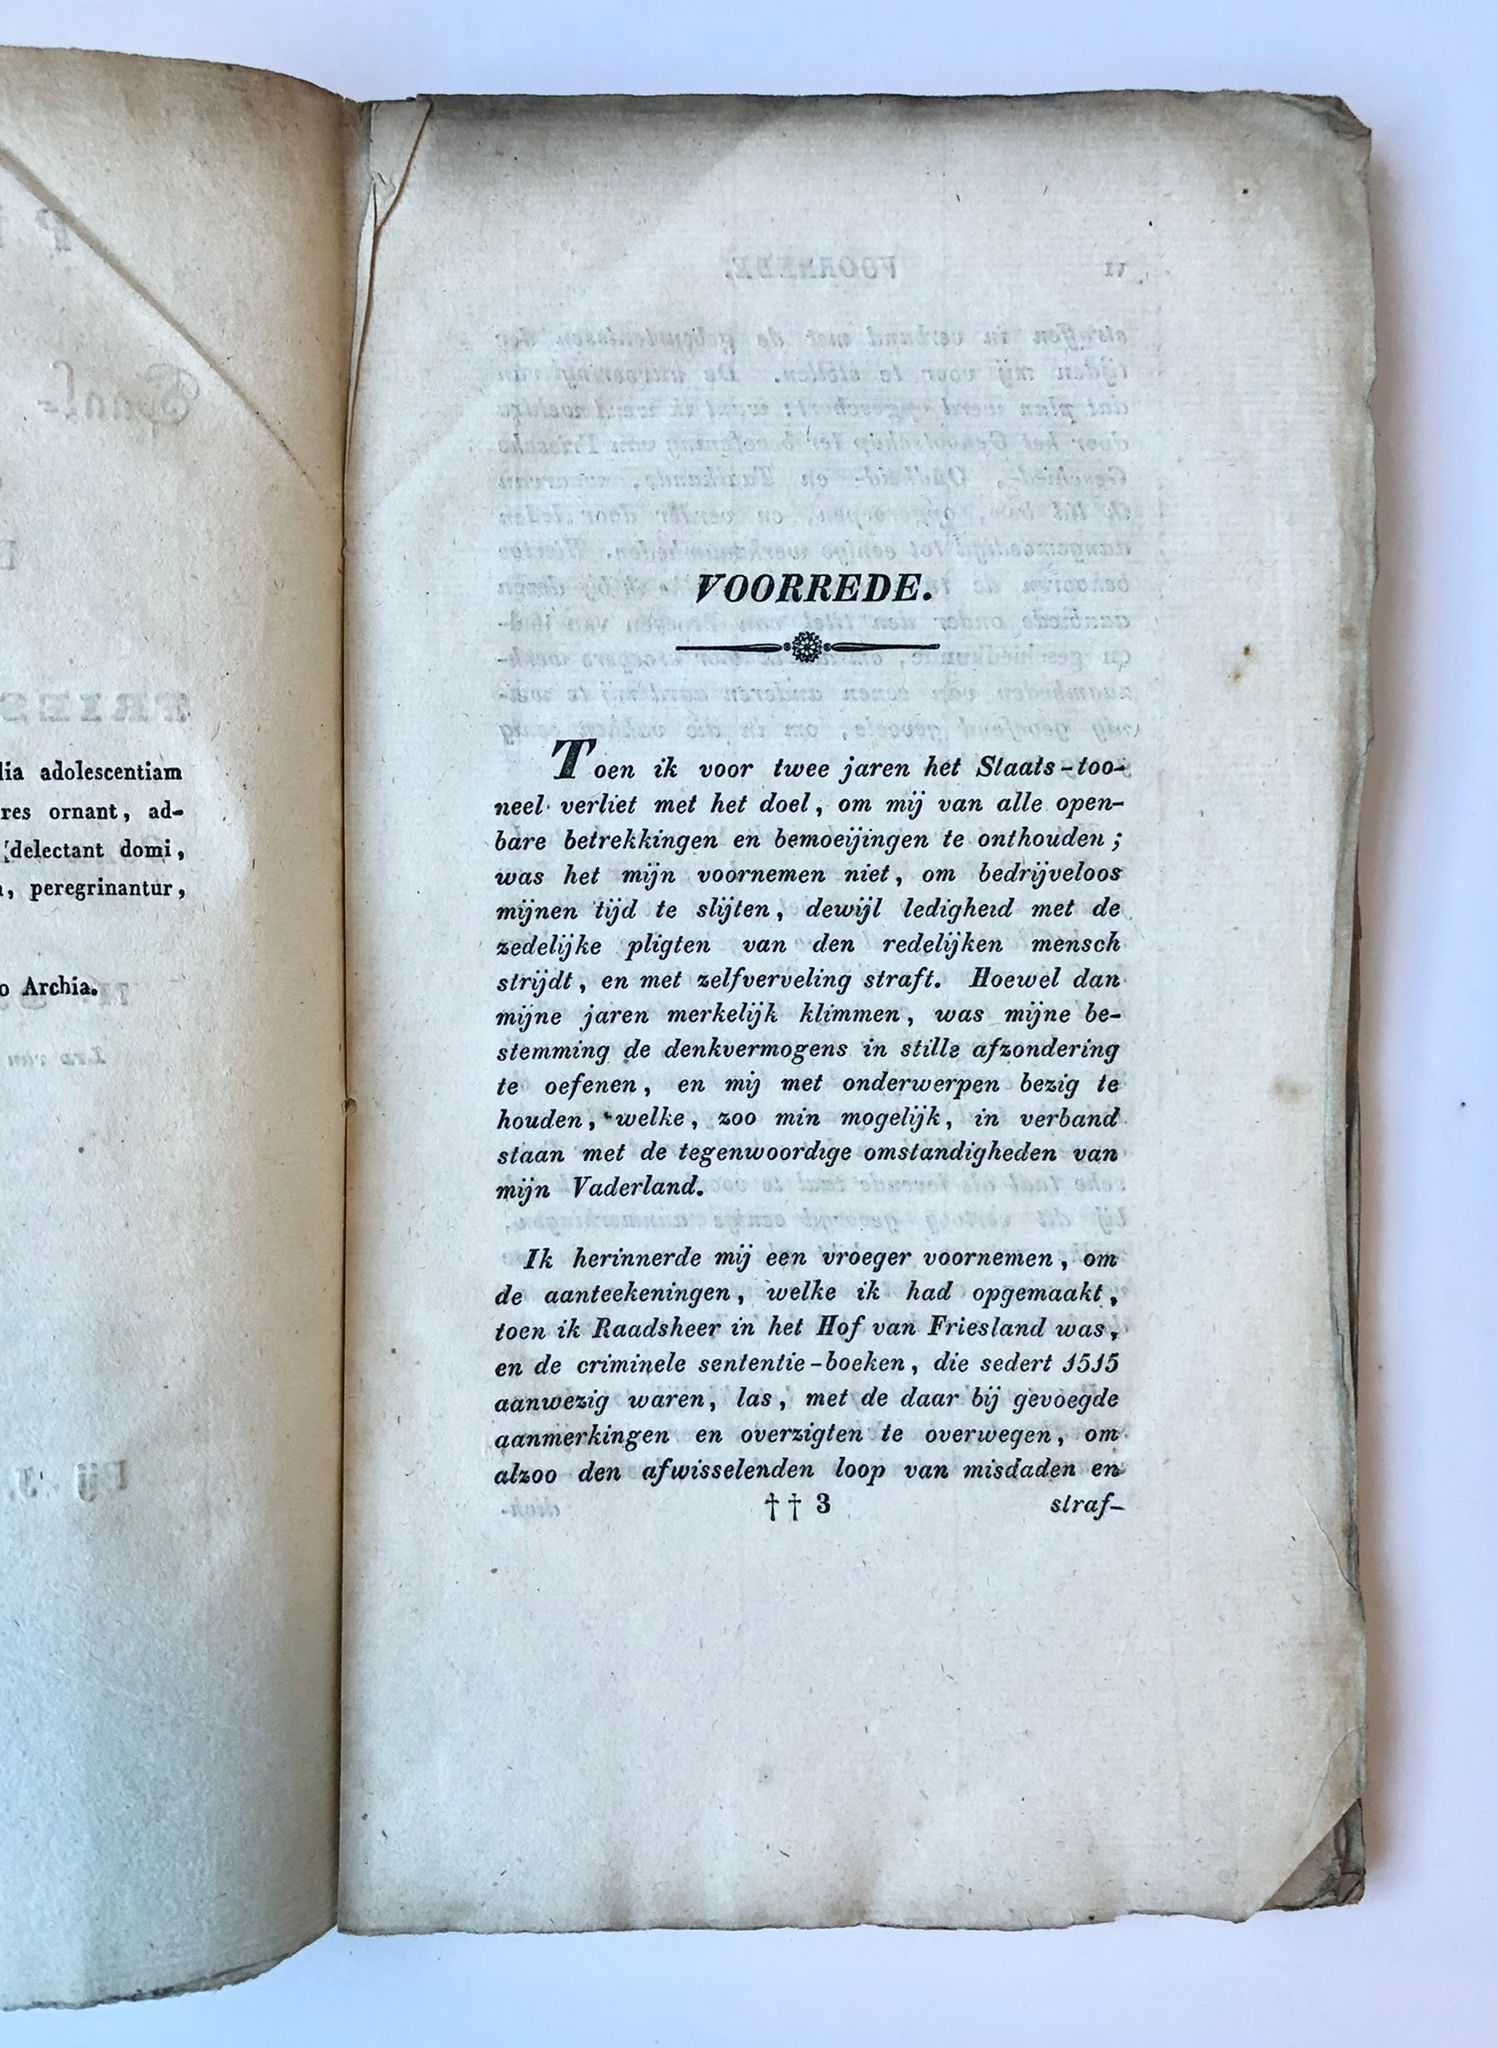 [Friesland, 1836] Proeven van Taal- en Geschied-kunde, met eene bijdrage over den Frieschen Kronijk van Ocke van Scharl en anderen. Bij J. W. Brouwer, Leeuwarden, 1836, 63 pp.